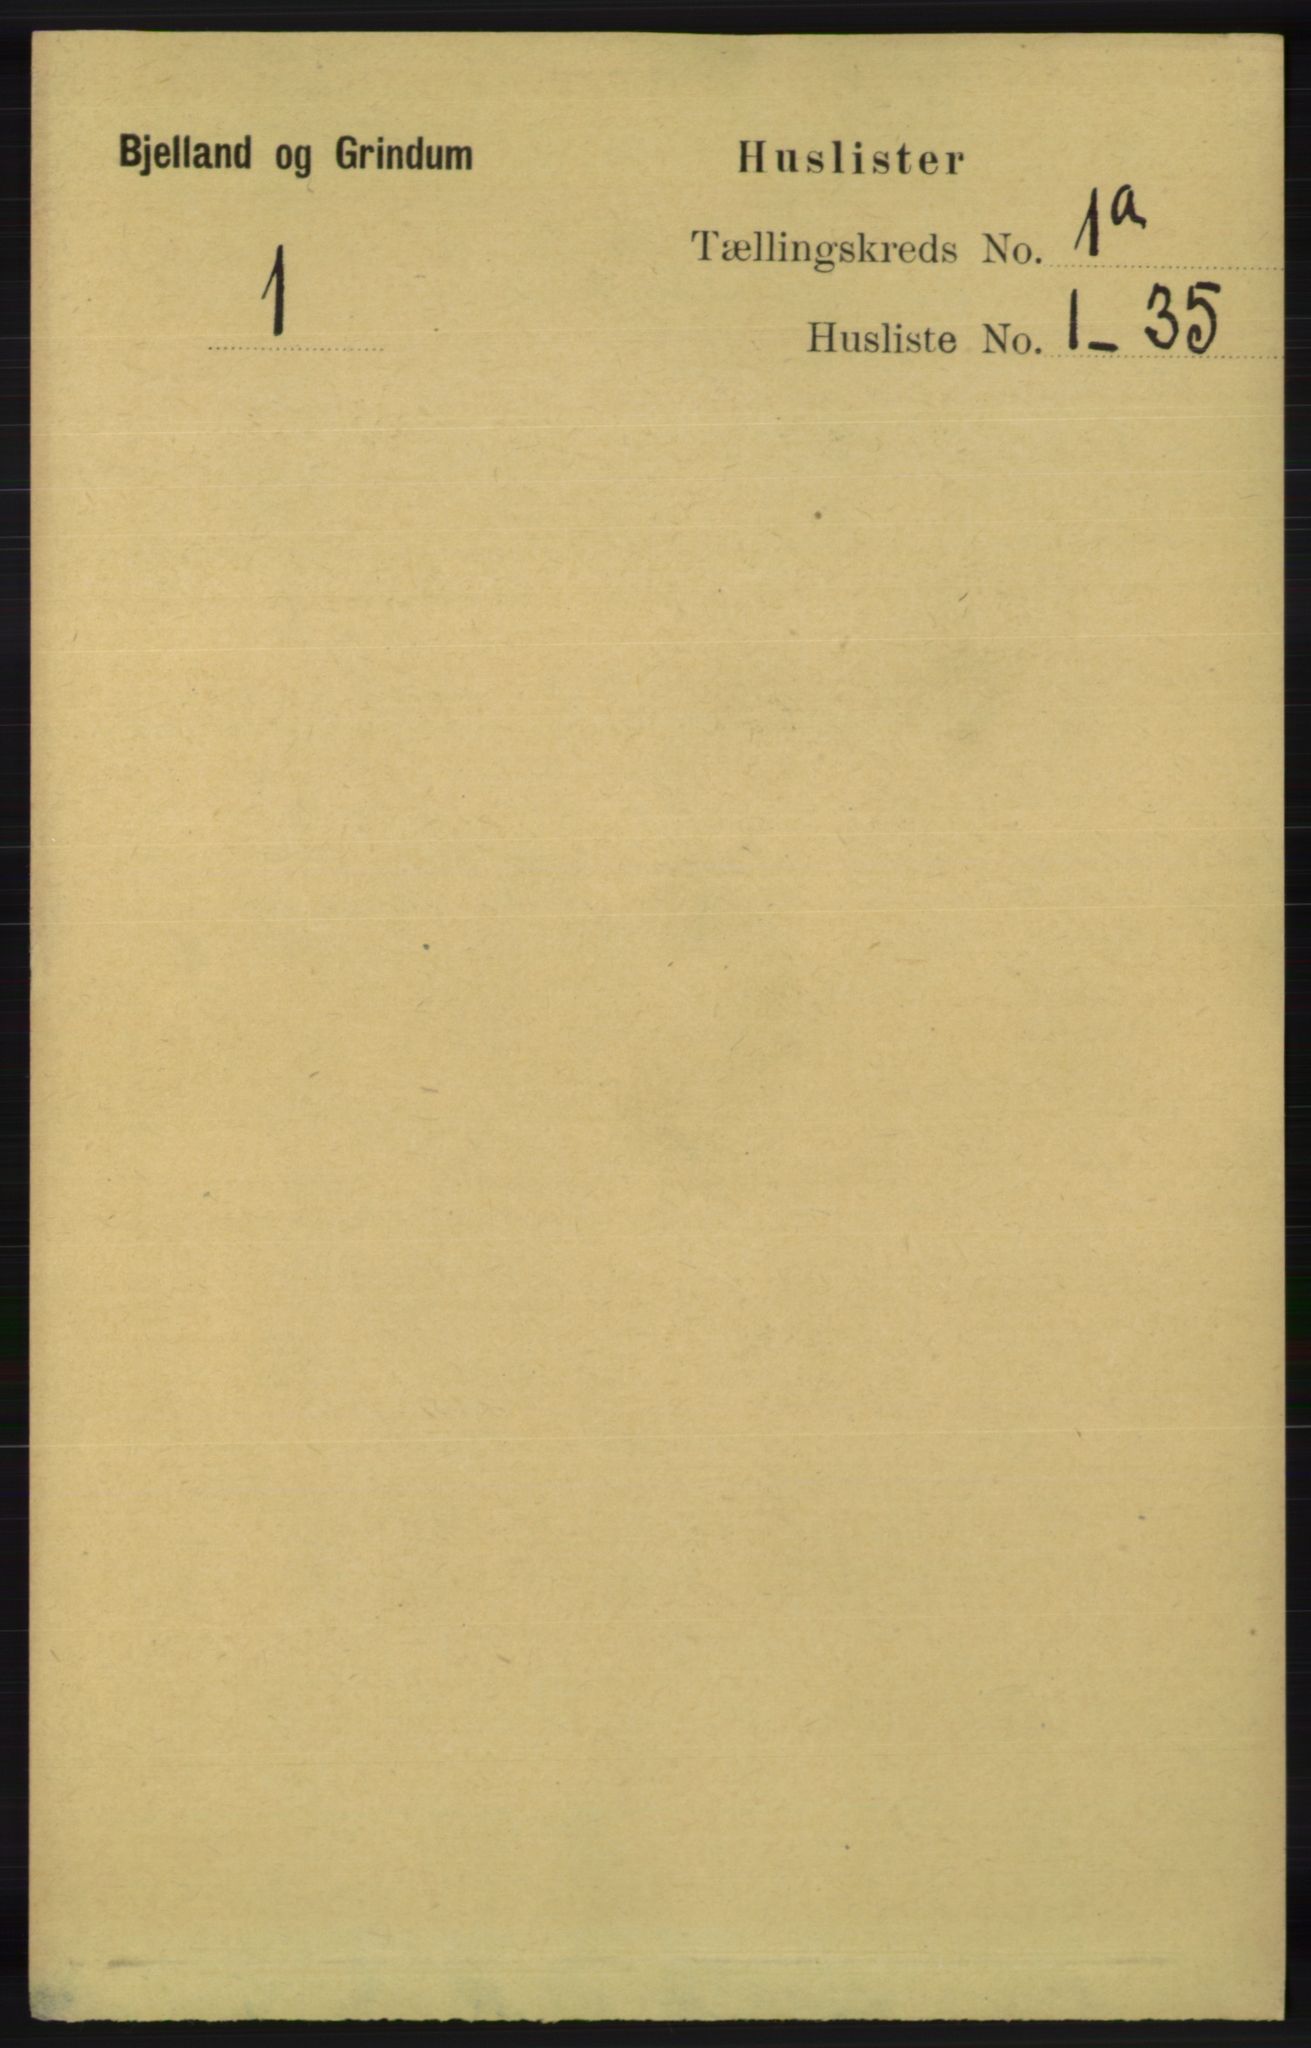 RA, Folketelling 1891 for 1024 Bjelland og Grindheim herred, 1891, s. 21